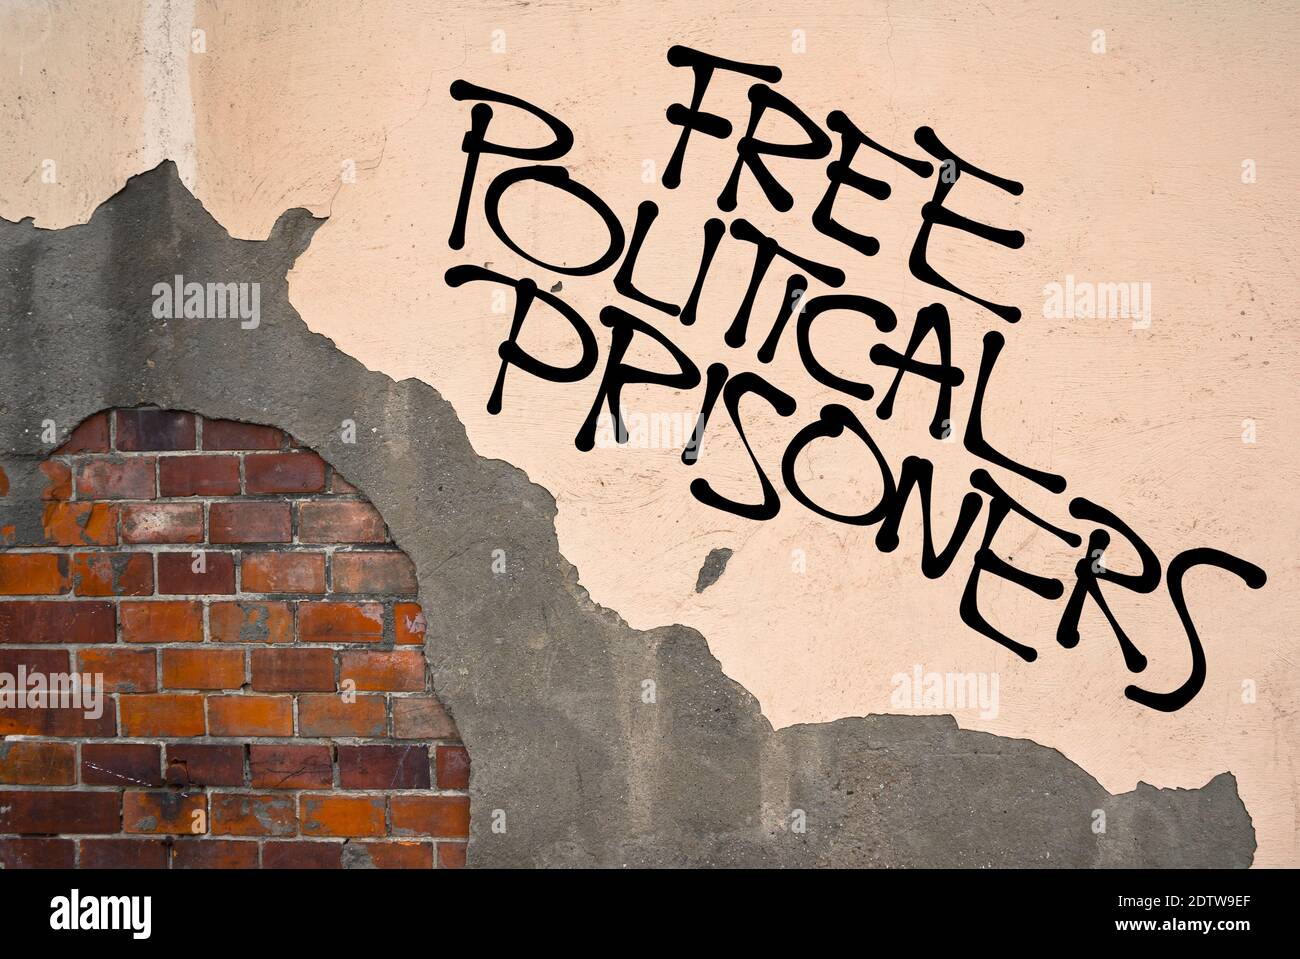 Handgeschriebenes Graffiti Freie politische Gefangene sprühten an die Wand, anarchistische Ästhetik. Appell, die Regierung zu kritisieren, die ihre Oppositio verfolgt Stockfoto